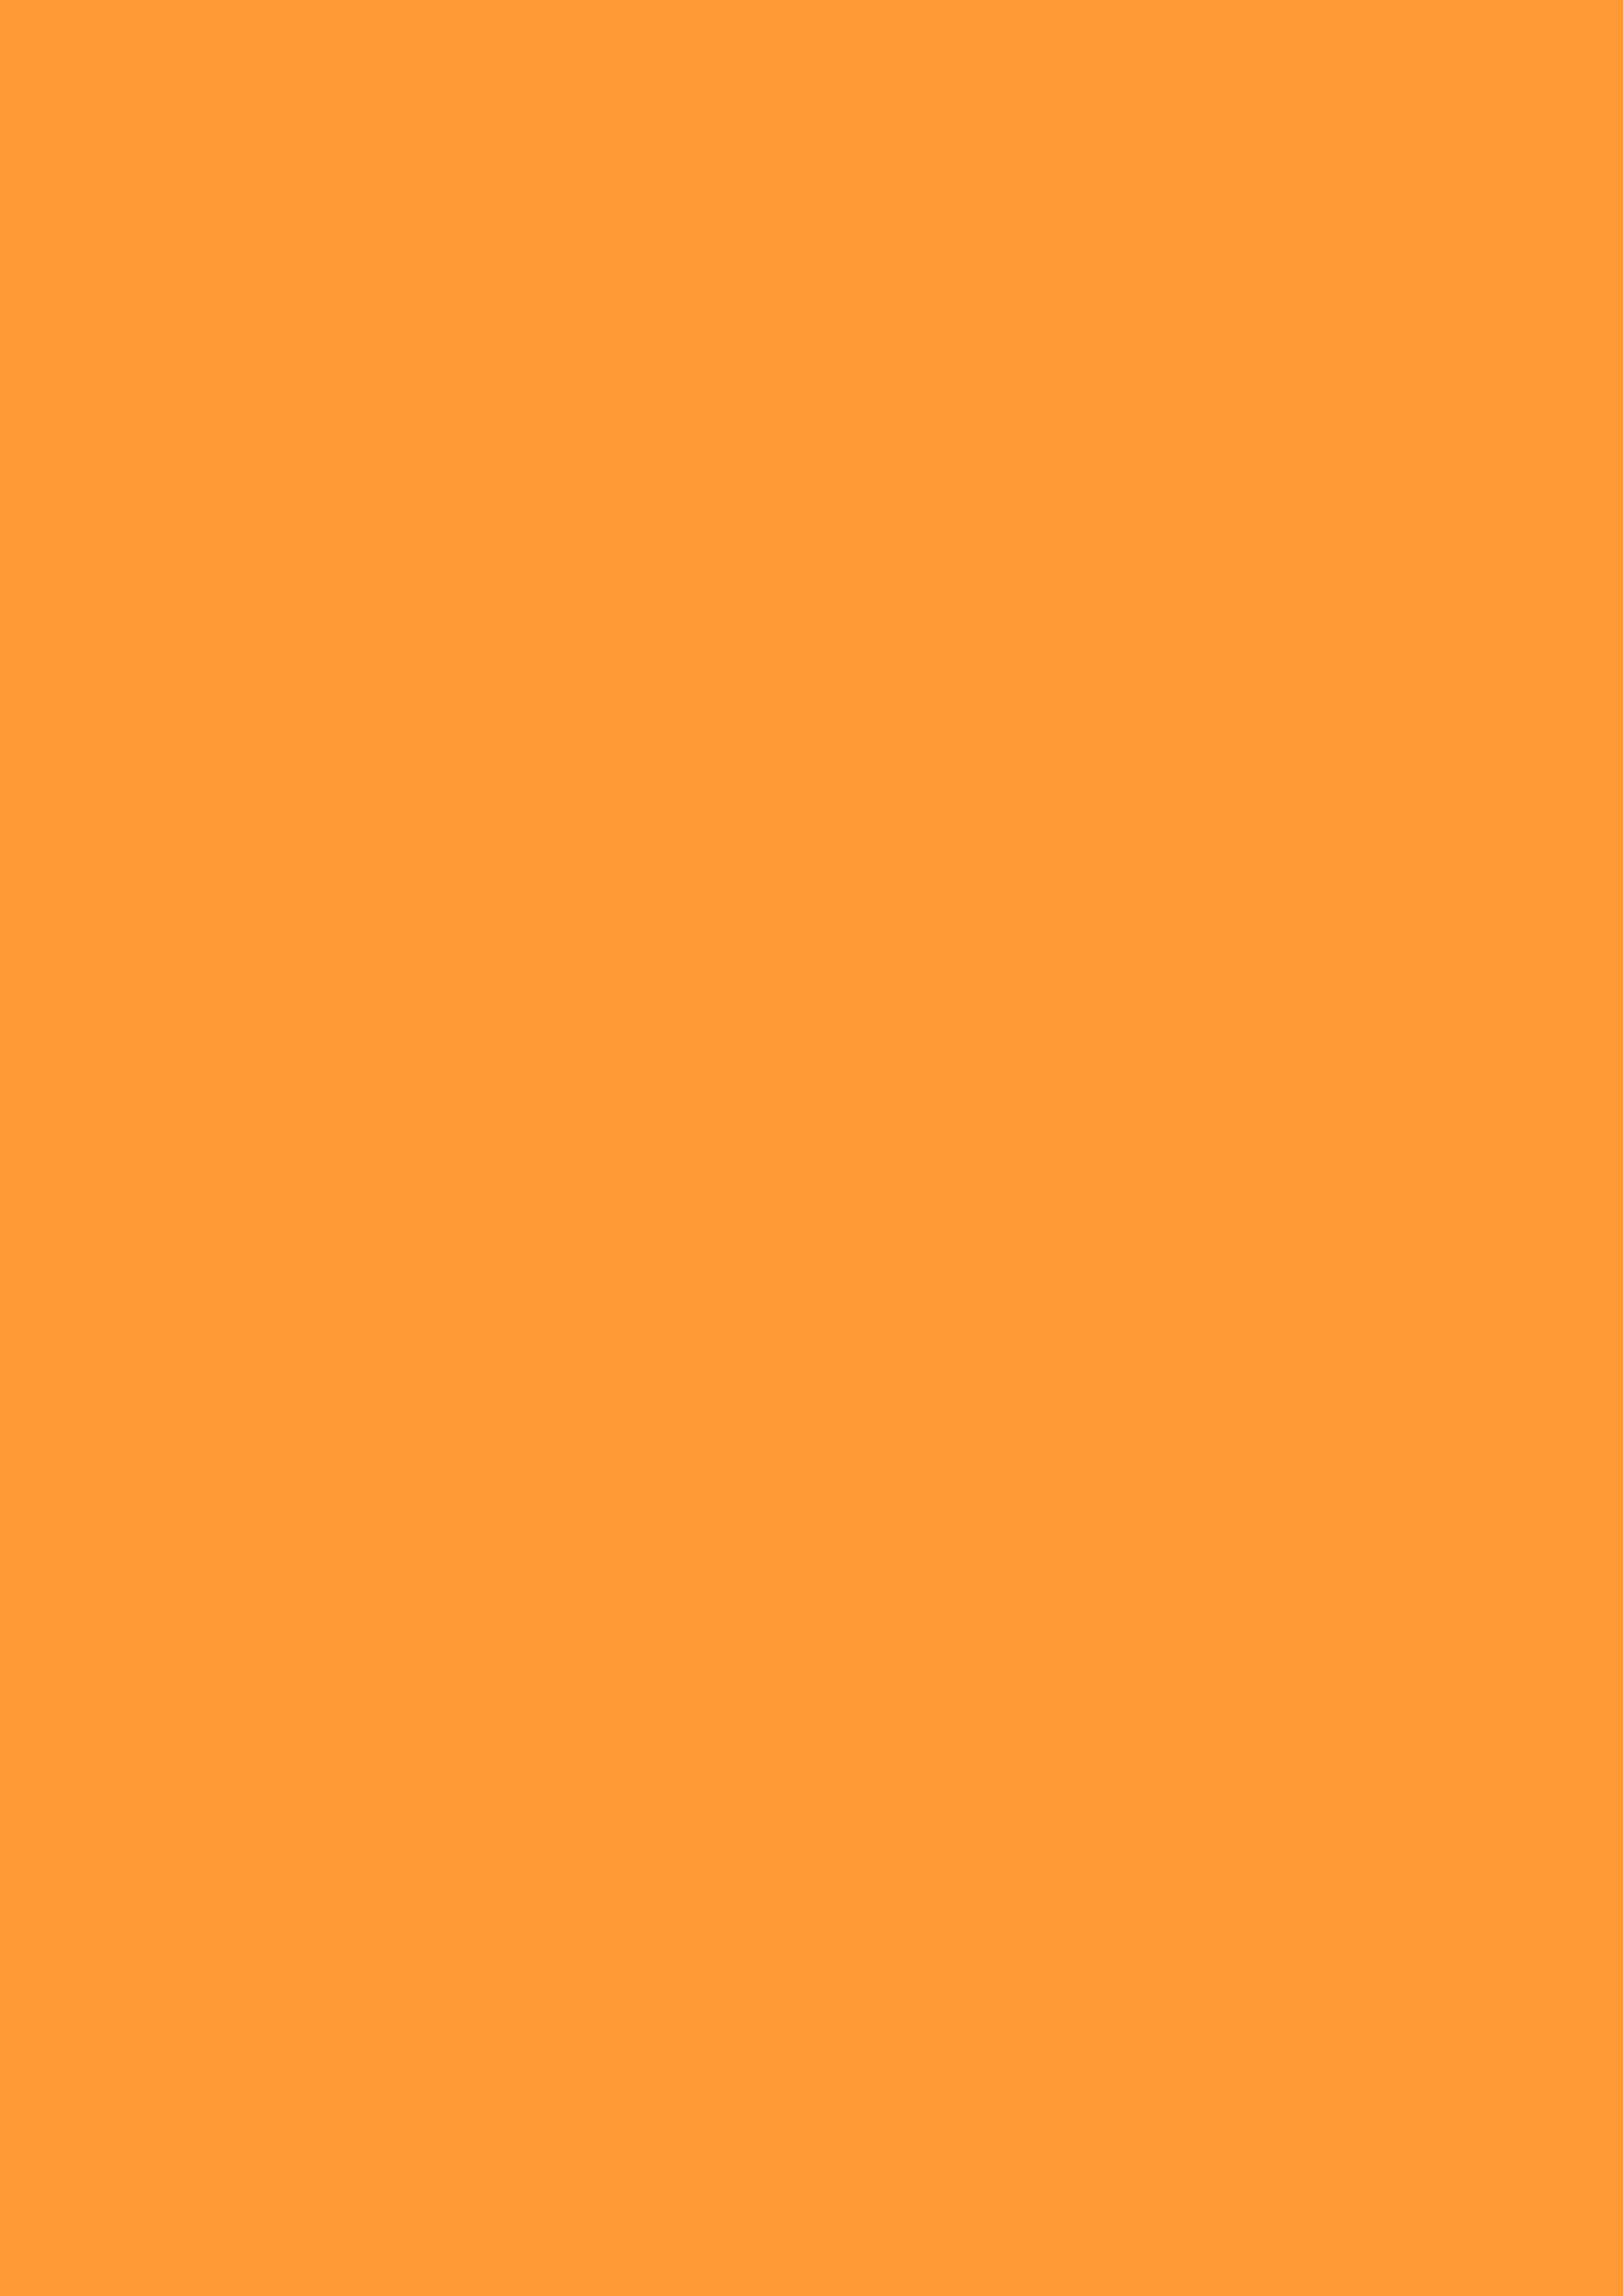 2480x3508 Deep Saffron Solid Color Background